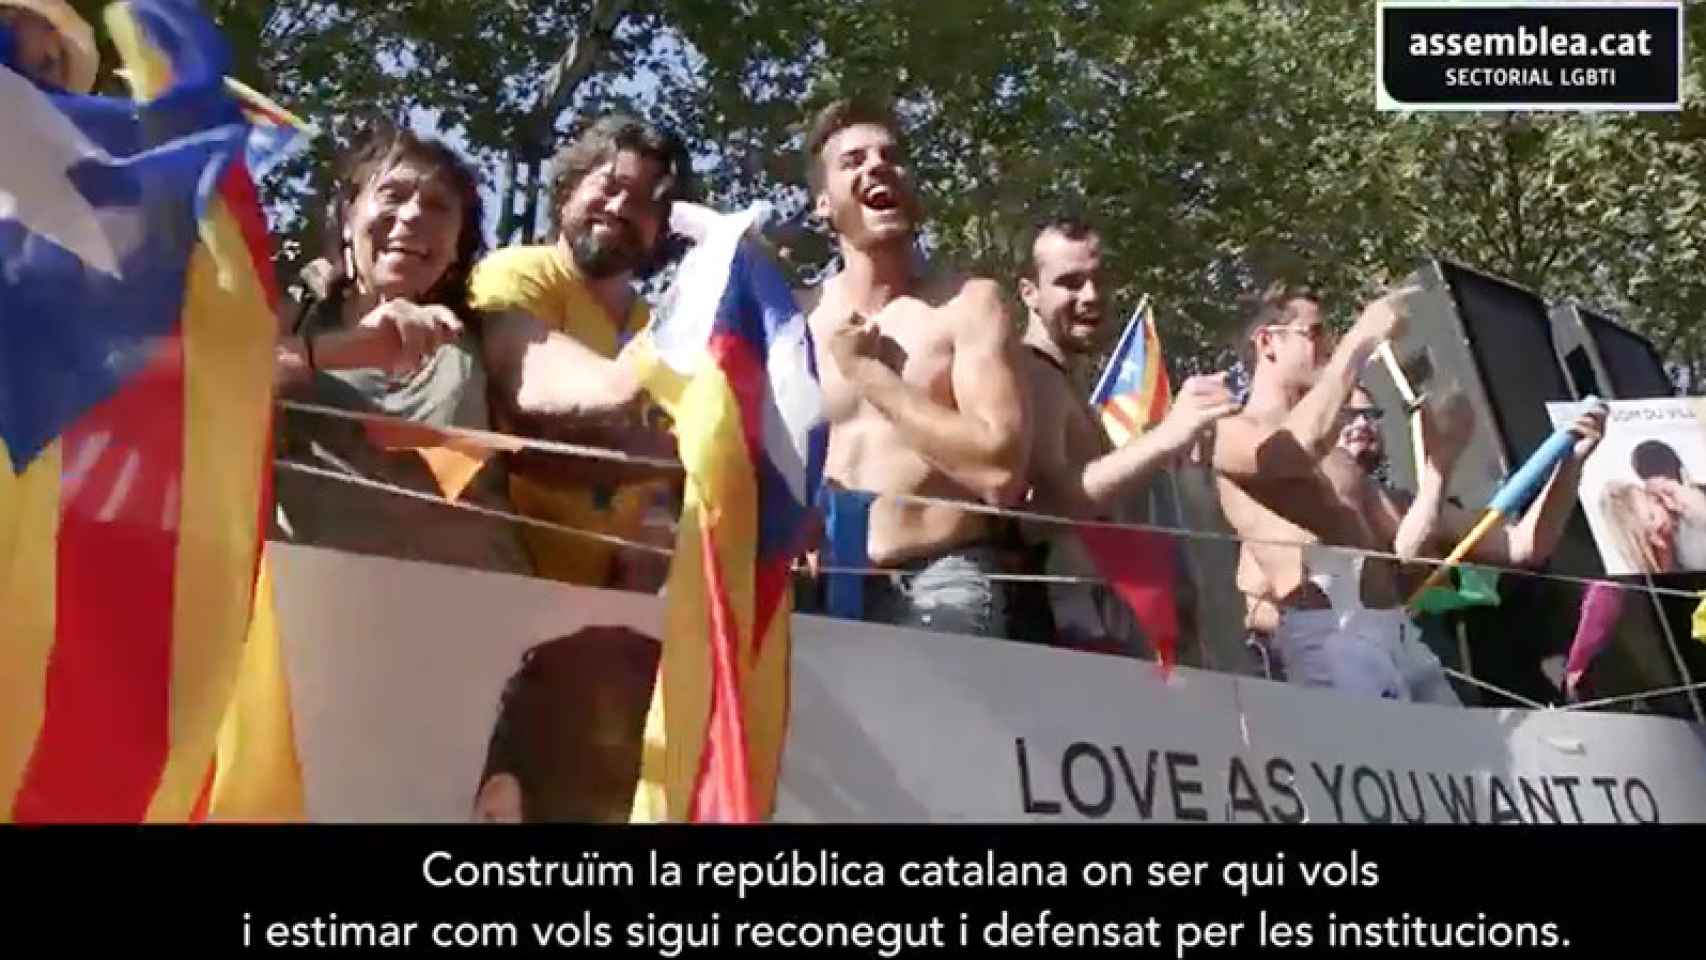 Imagen del vídeo de la Assemblea Nacional Catalana (ANC) en el que se promete libertad sexual en una Cataluña independiente. / CG